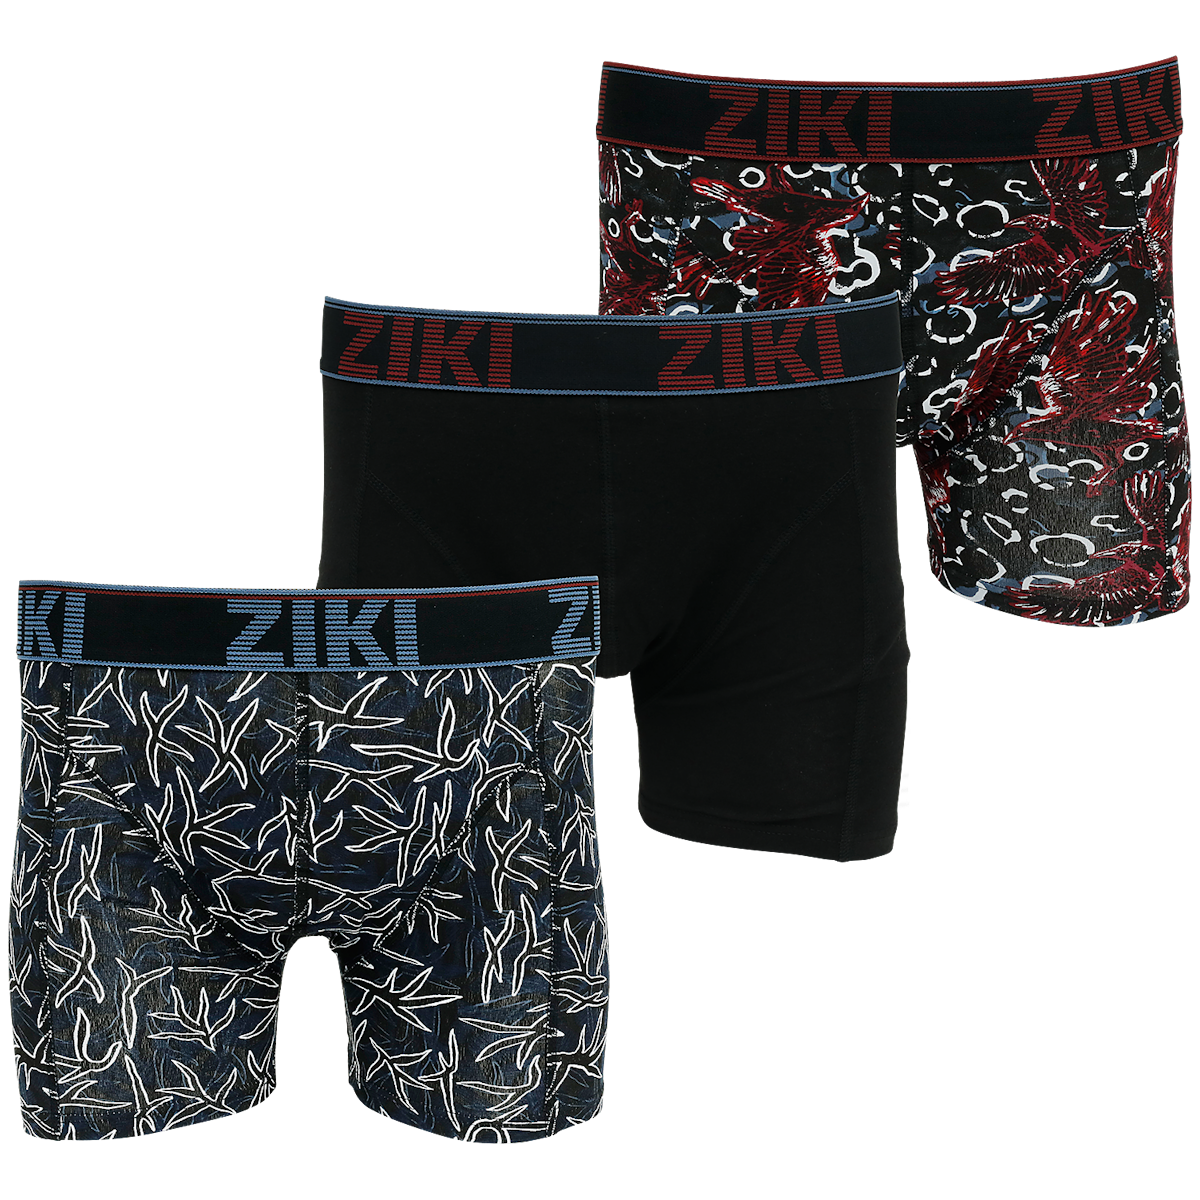 Ziki Premium boxershorts